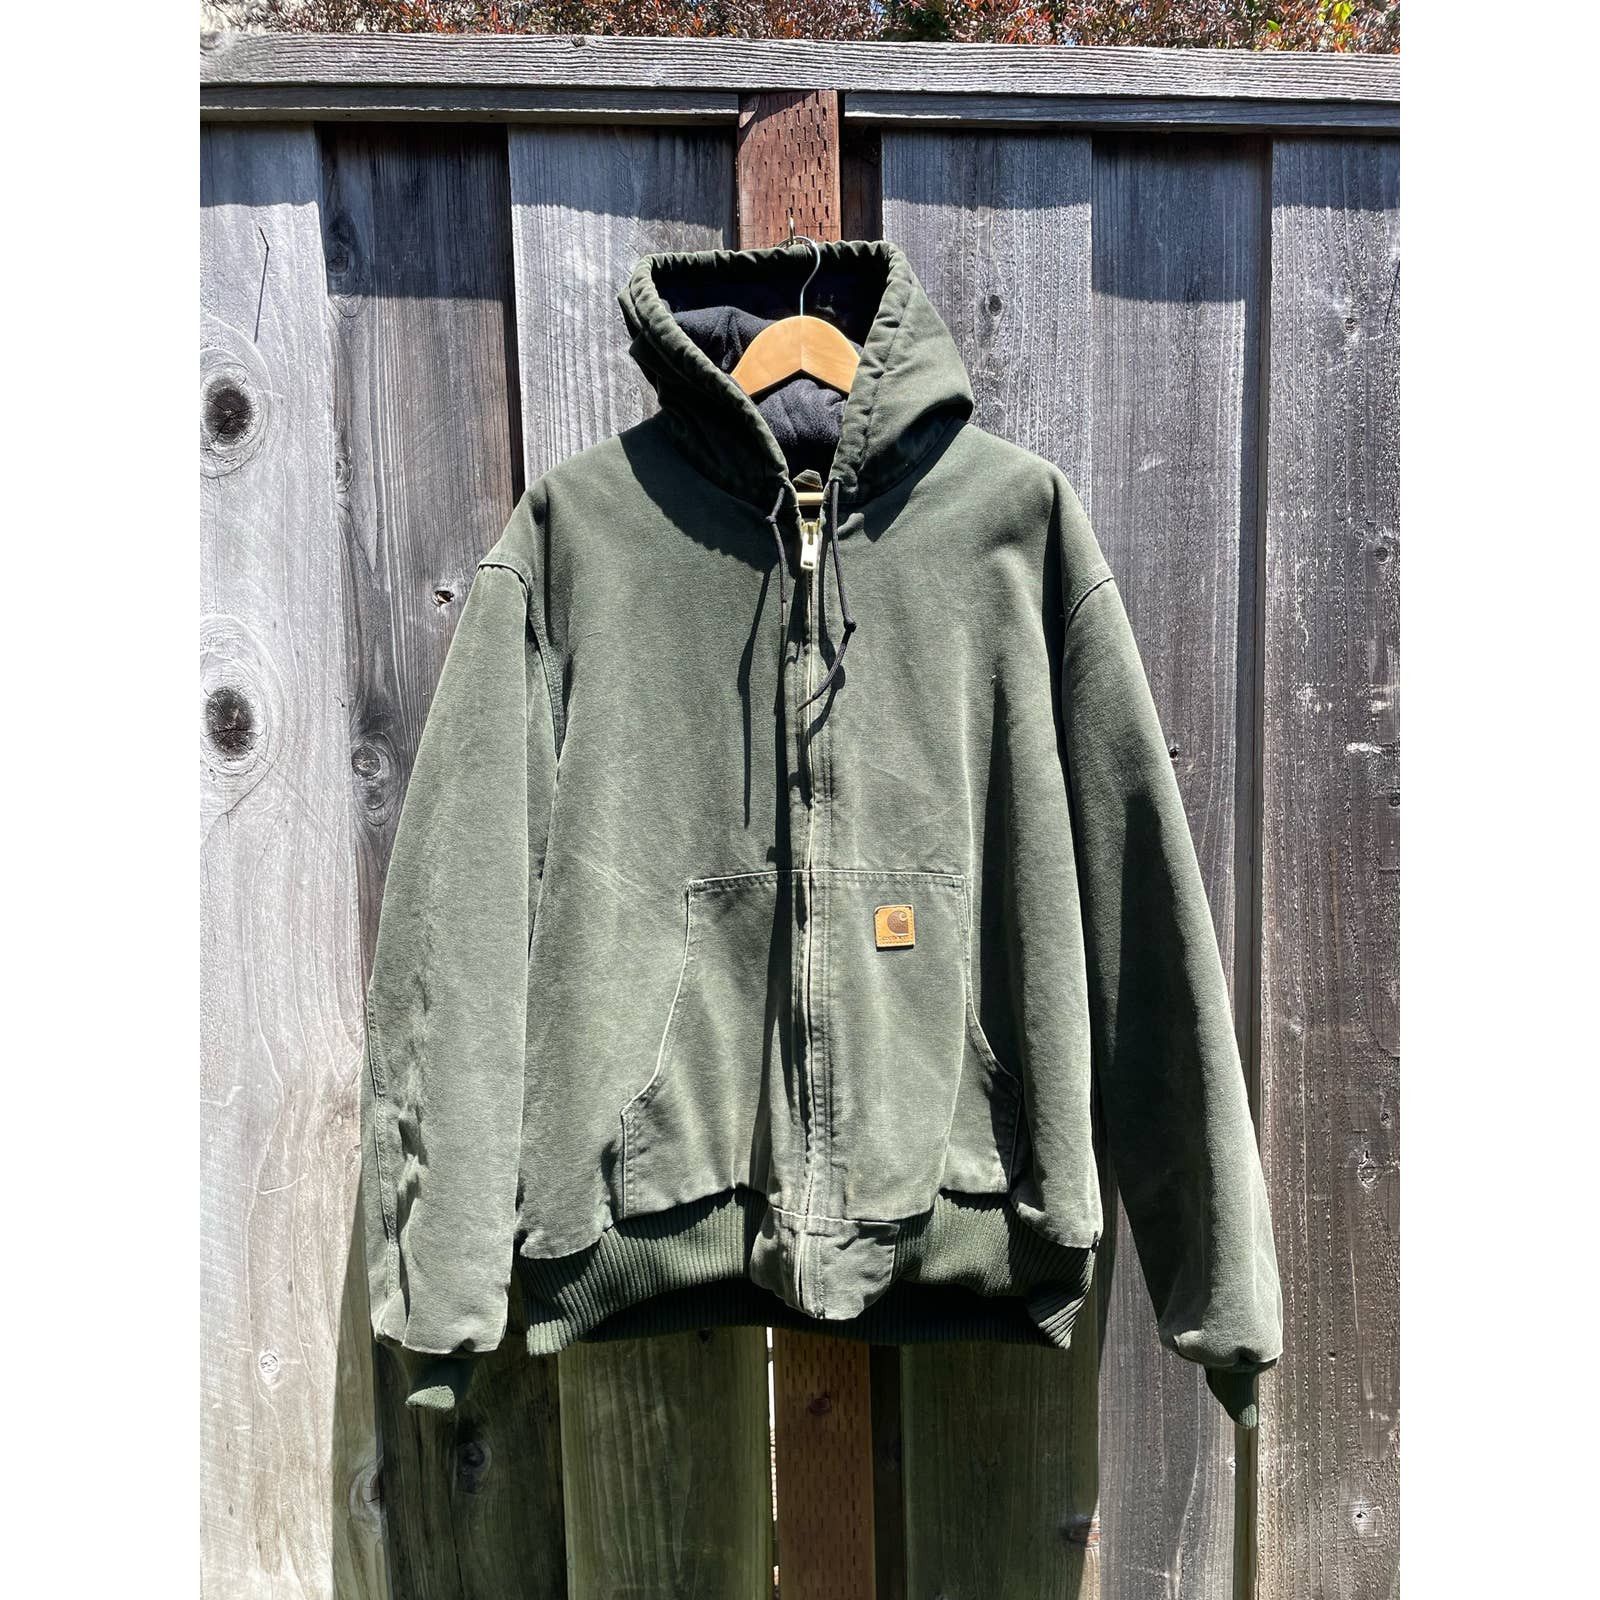 Carhartt Carhartt J130 MOS Green Hooded Jacket Men Size XL Zip Quilt ...